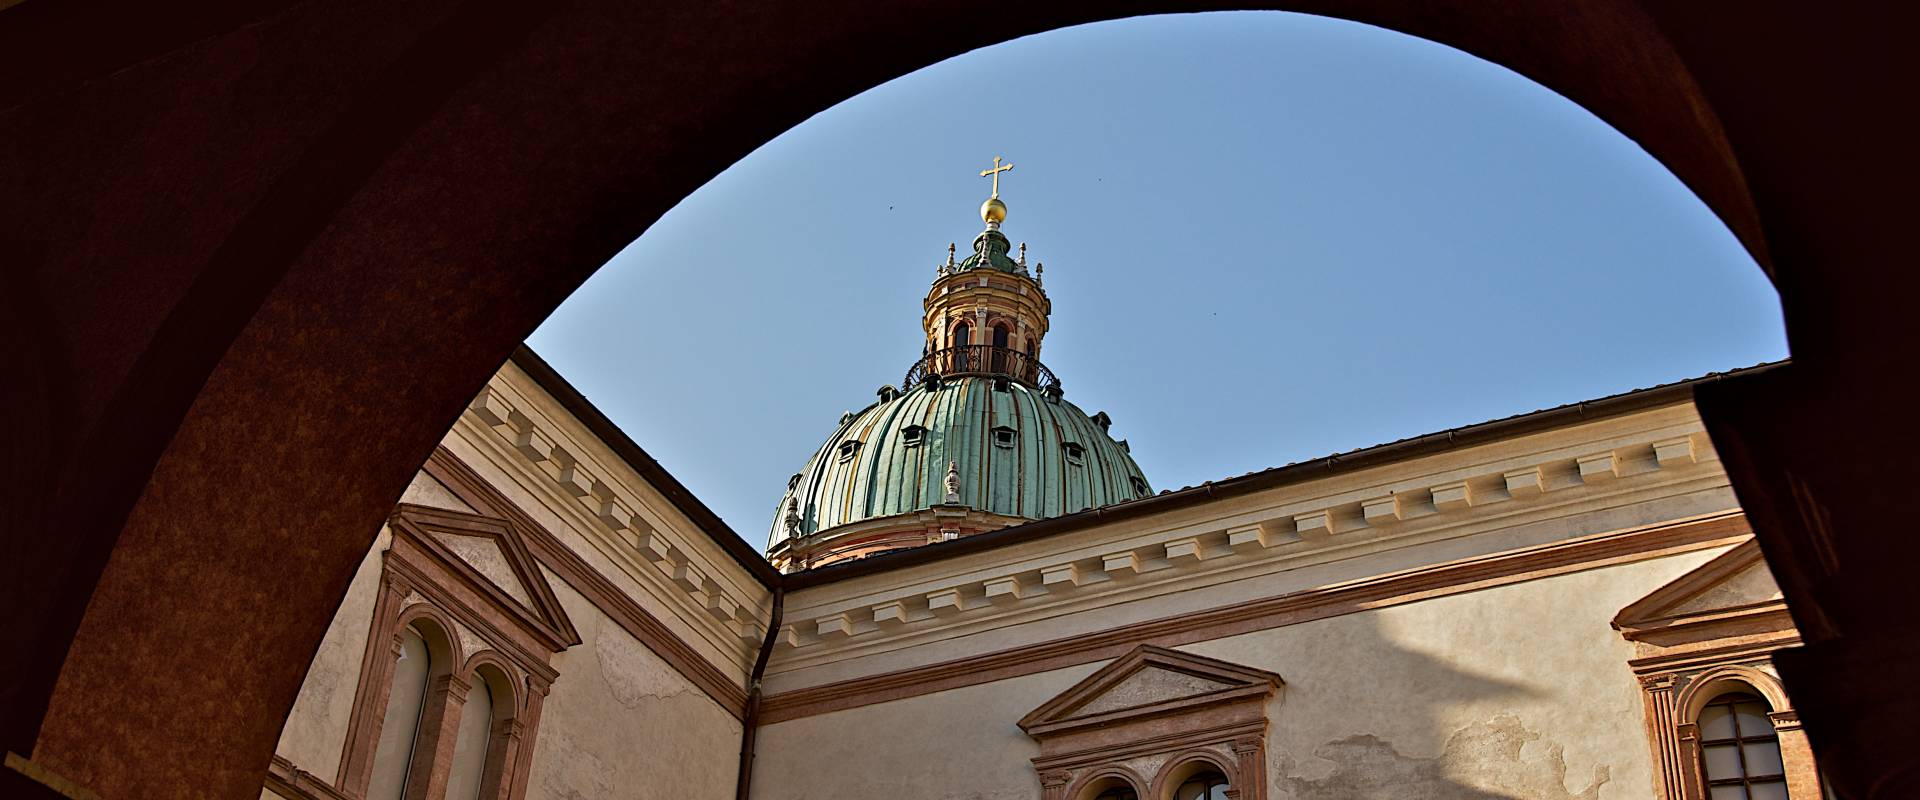 Vista della cupola dai Chiostri foto di Caba2011